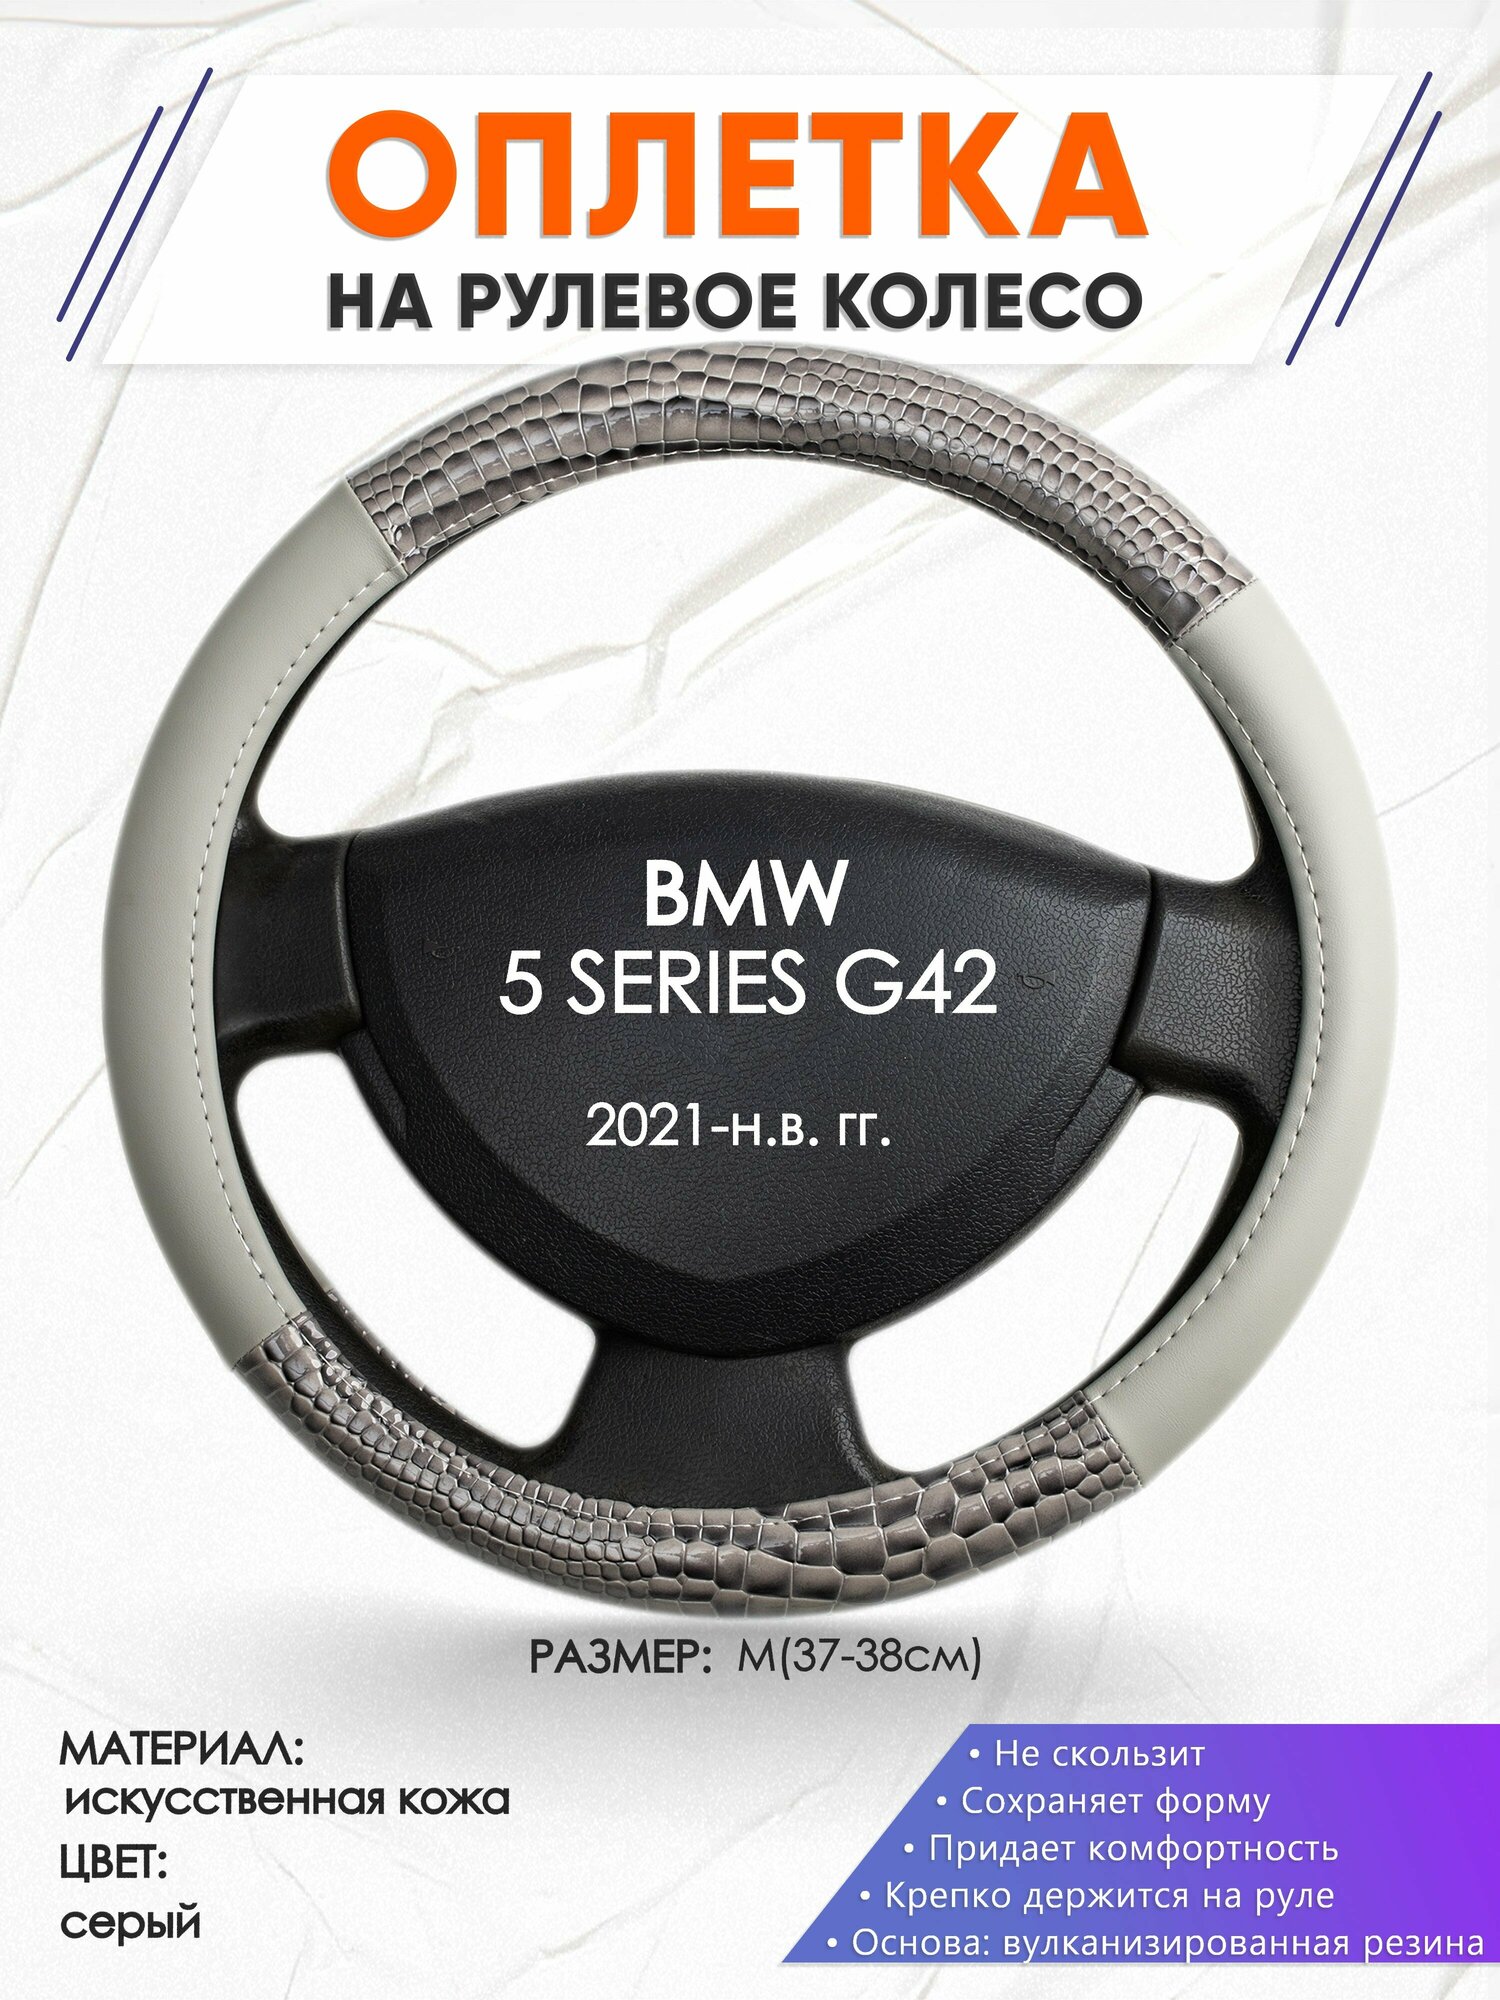 Оплетка наруль для BMW 5 SERIES G42(Бмв серия 5) 2021-н. в. годов выпуска, размер M(37-38см), Искусственная кожа 84